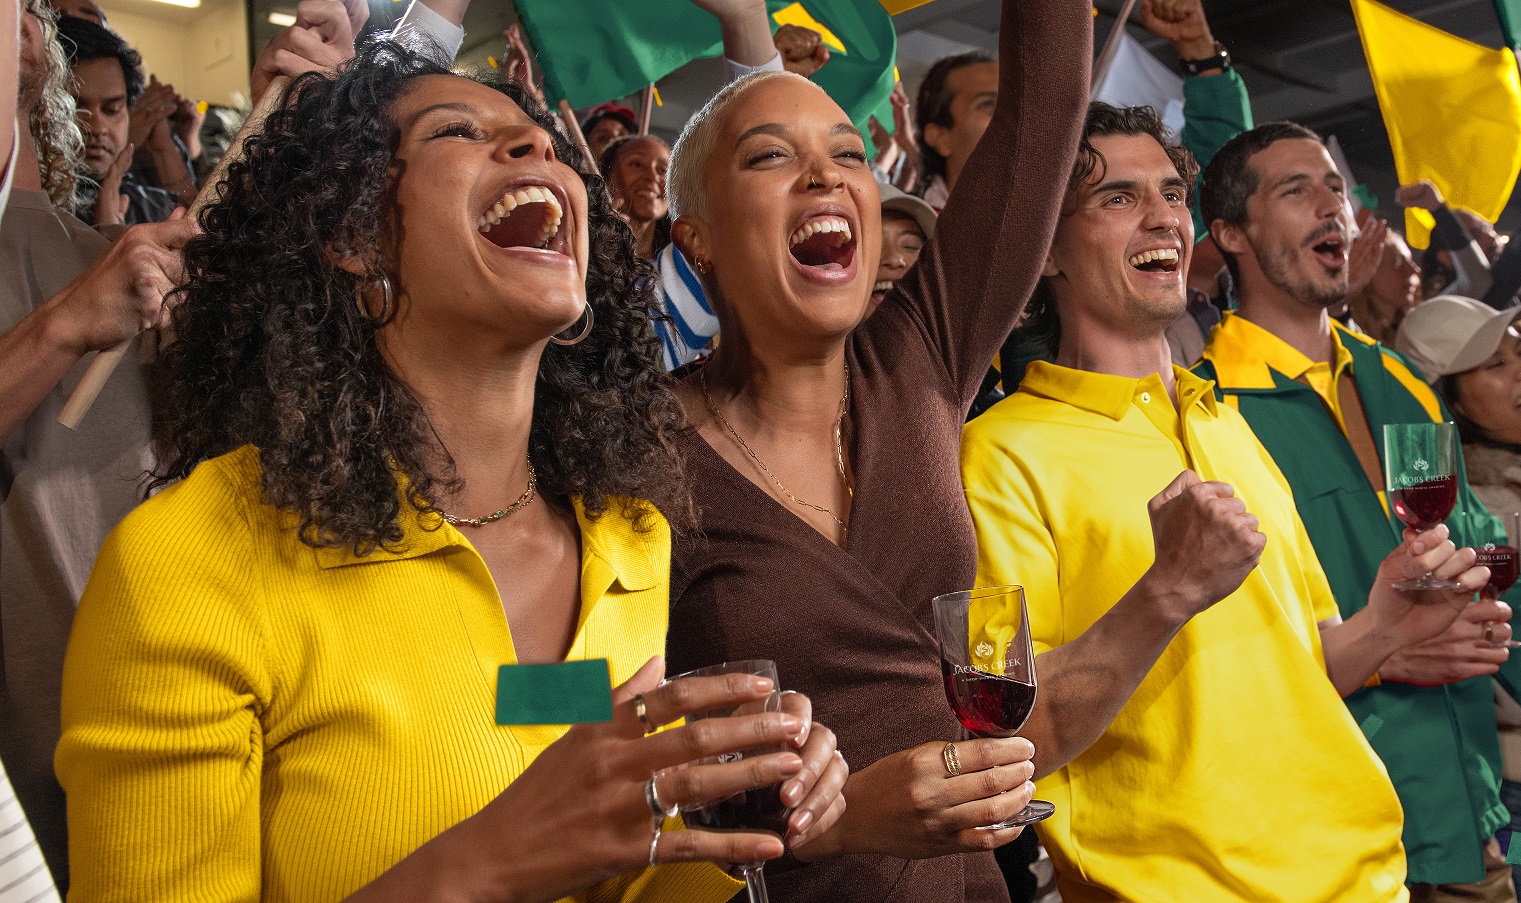 Jacob’s Creek es el patrocinador oficial de vinos tranquilos de la Copa Mundial Femenina de la FIFA 2023 en Australia y Nueva Zelanda.